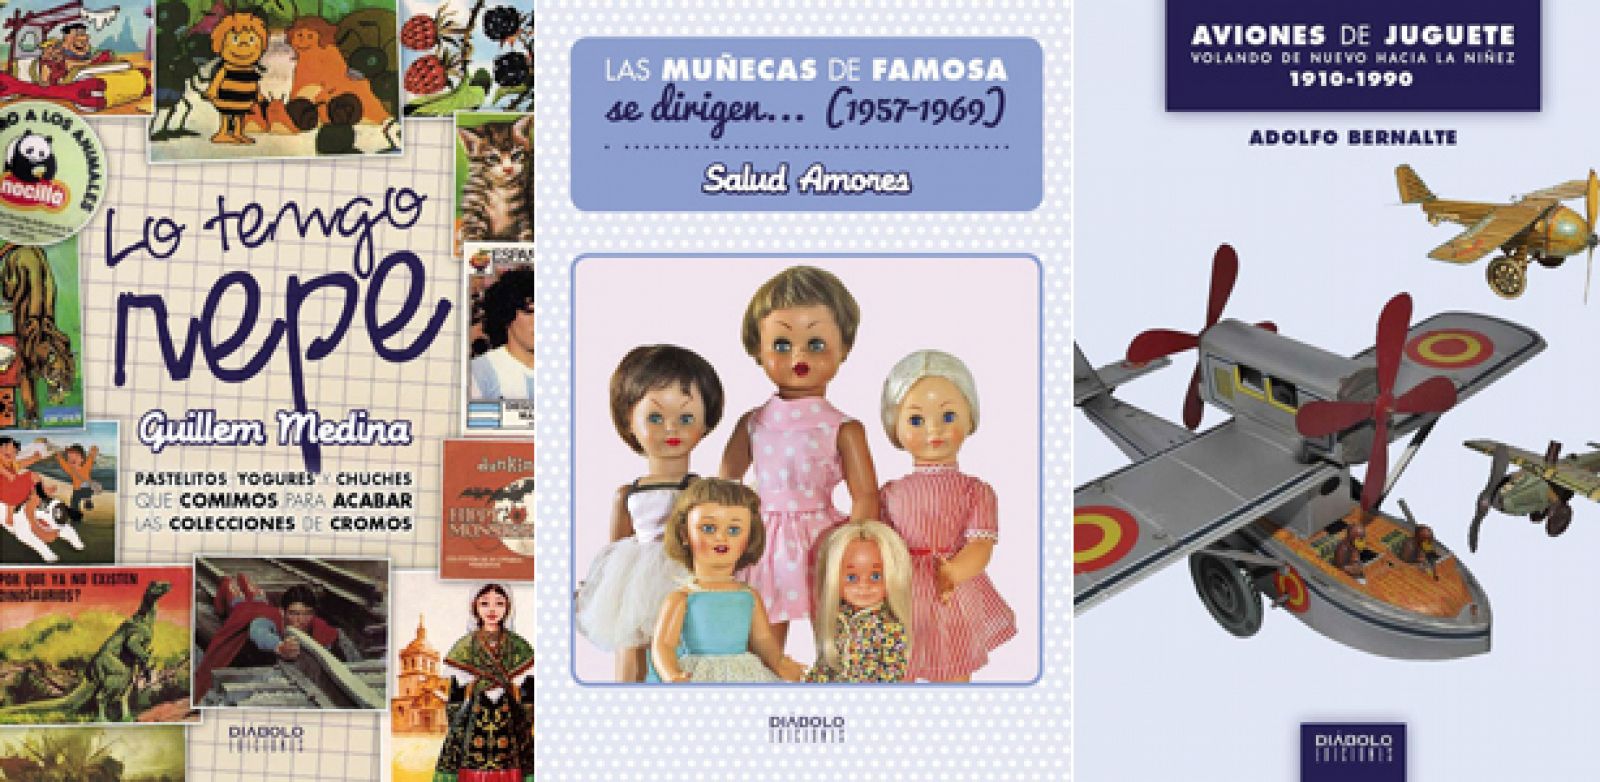 Portadas de Las muñecas de famosa se dirigen... (1957-1969), Lo tengo repe y Aviones de juguete. Volando de nuevo hacia la niñez (1910-1990)